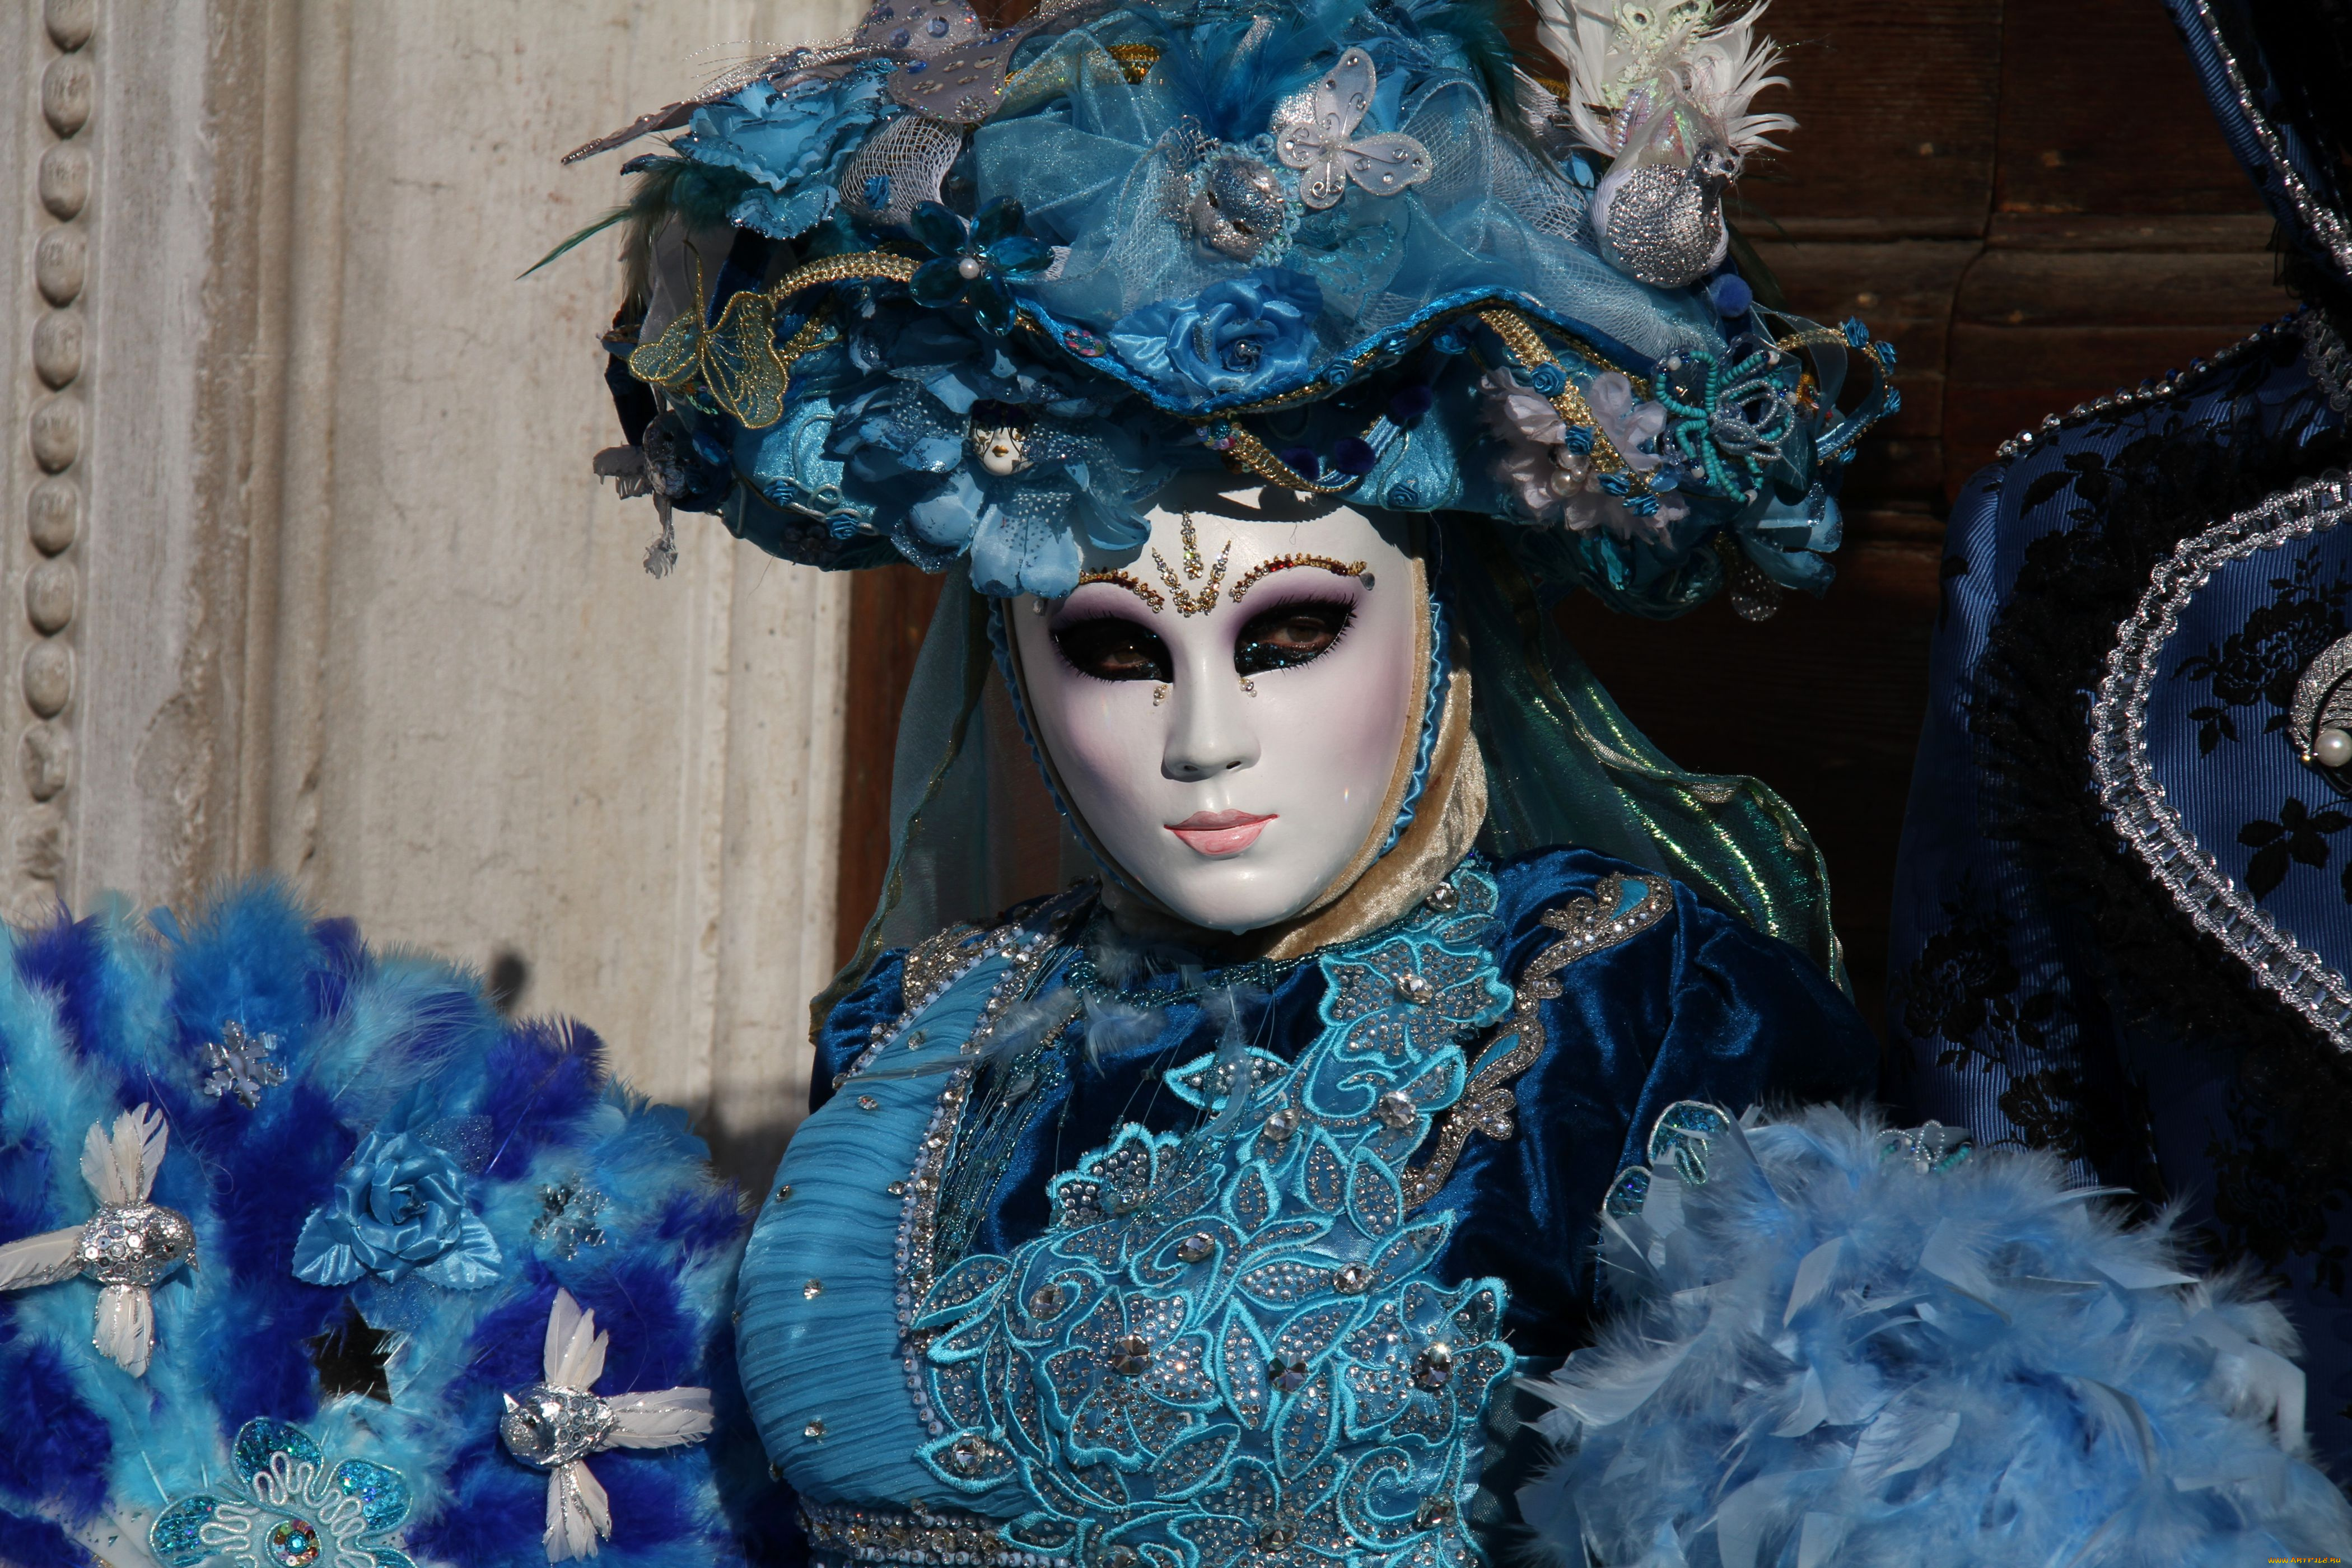 разное, маски, карнавальные, костюмы, венеция, карнавал